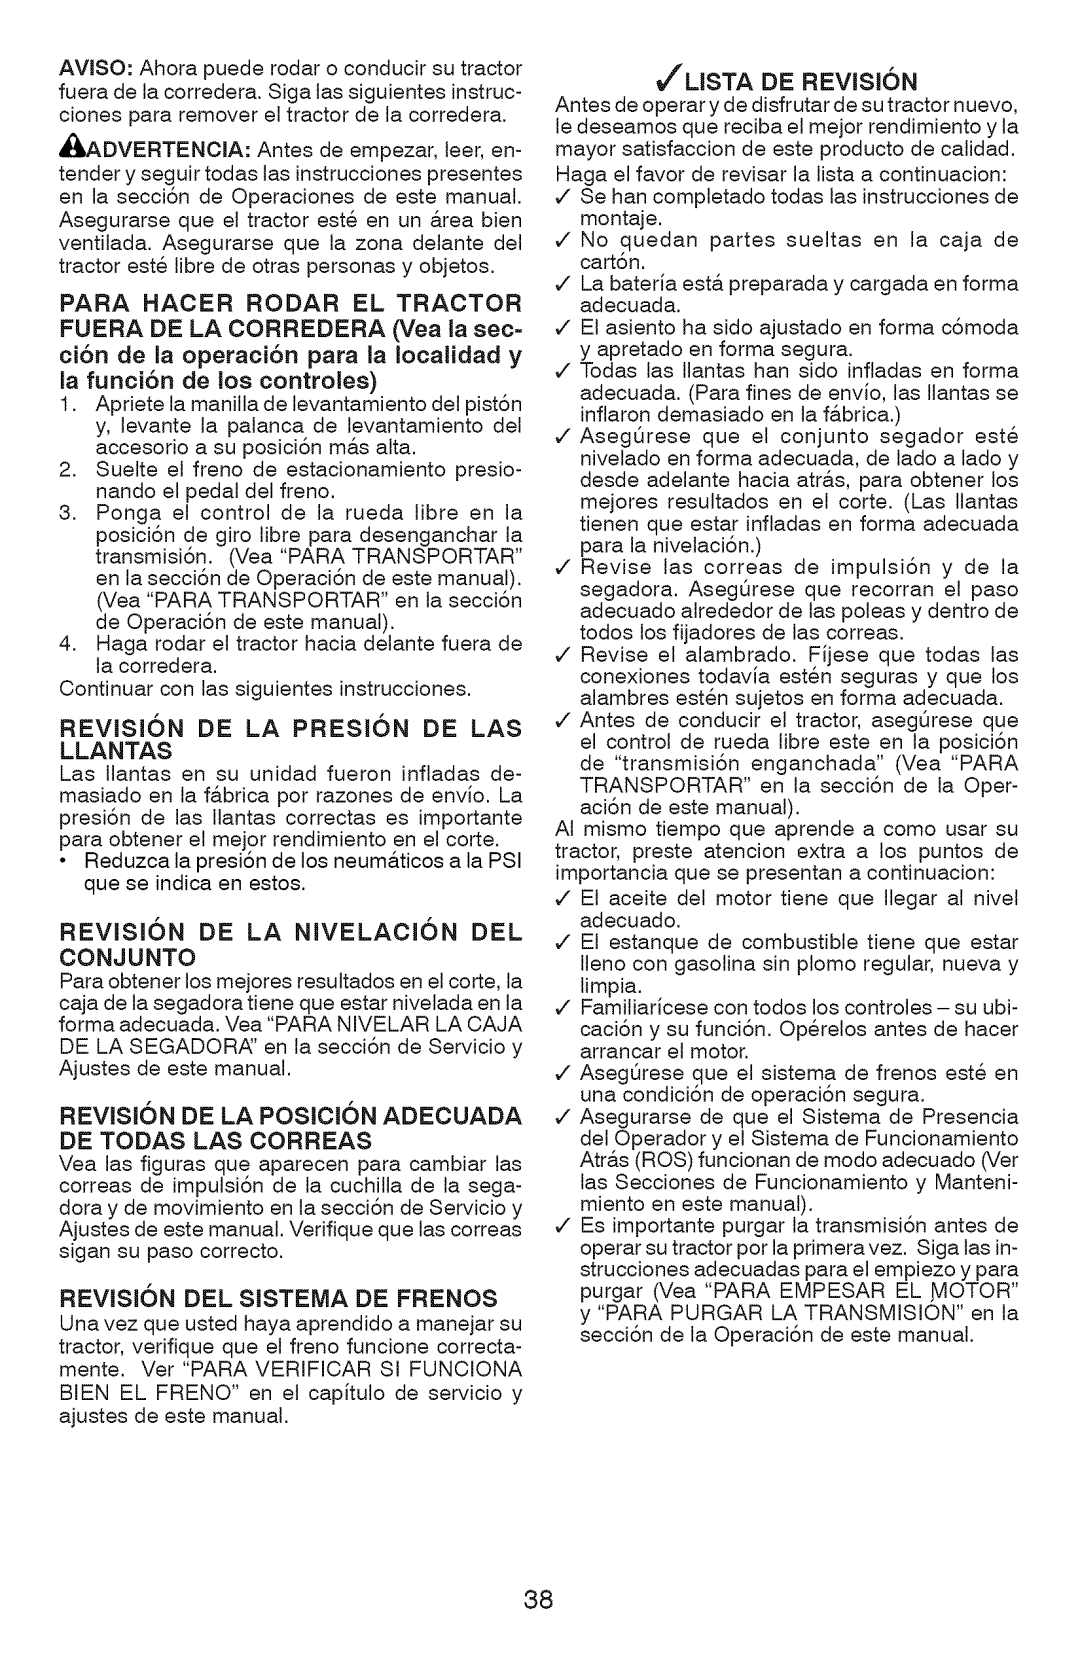 Craftsman YT 4000 Revision De La Preskn De Las Llantas, Revision De La Nivelacion Del, REVISI6N DE LA POSICION ADECUADA 